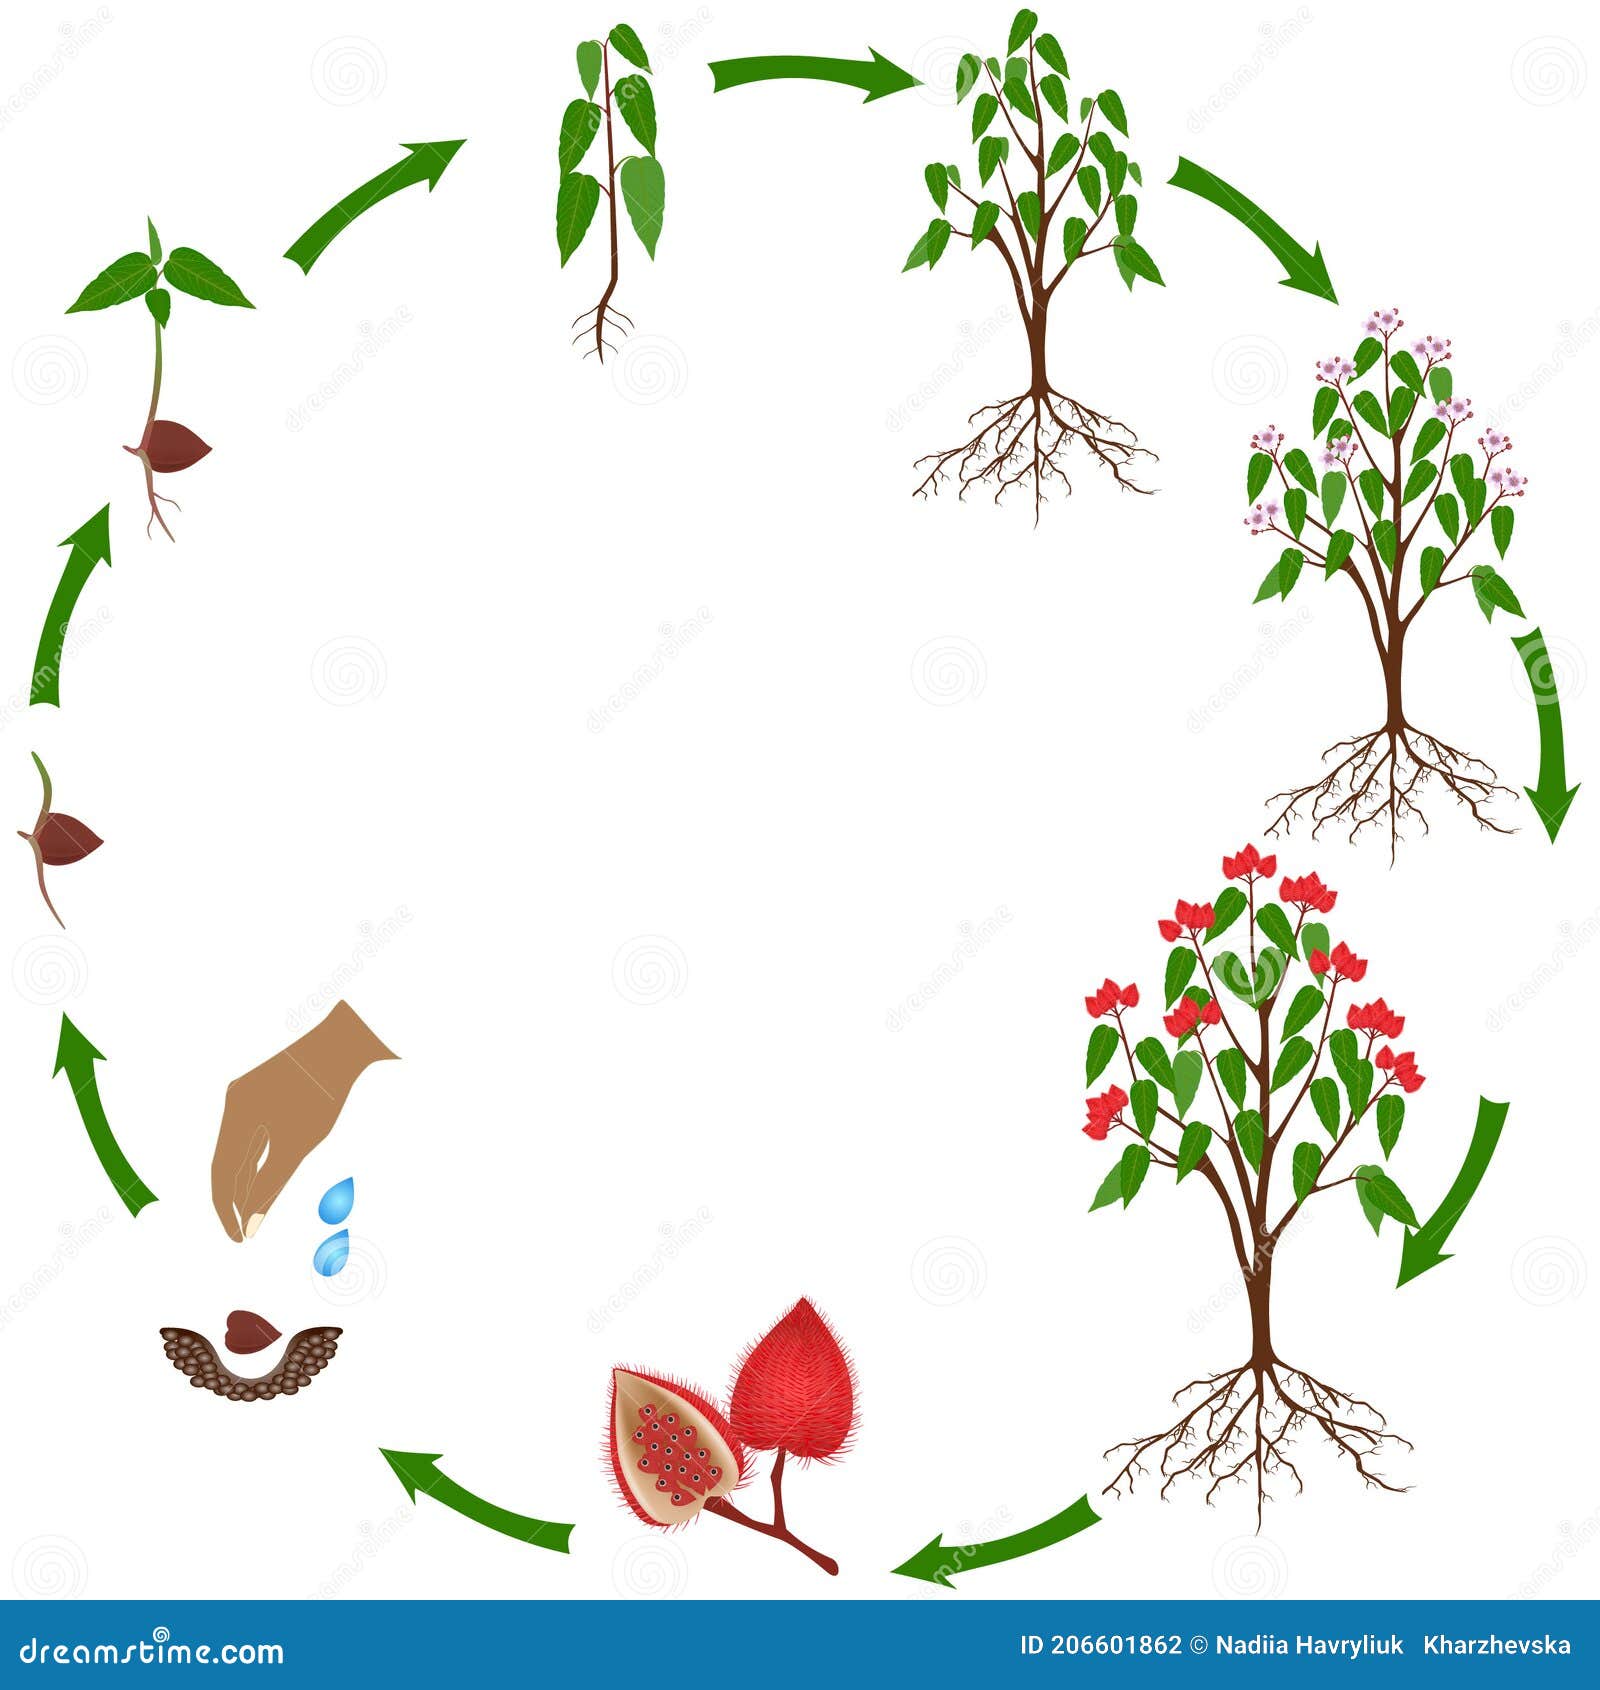 Life Cycle of a Bixa Orellana or Anatto Plant on a White Background ...